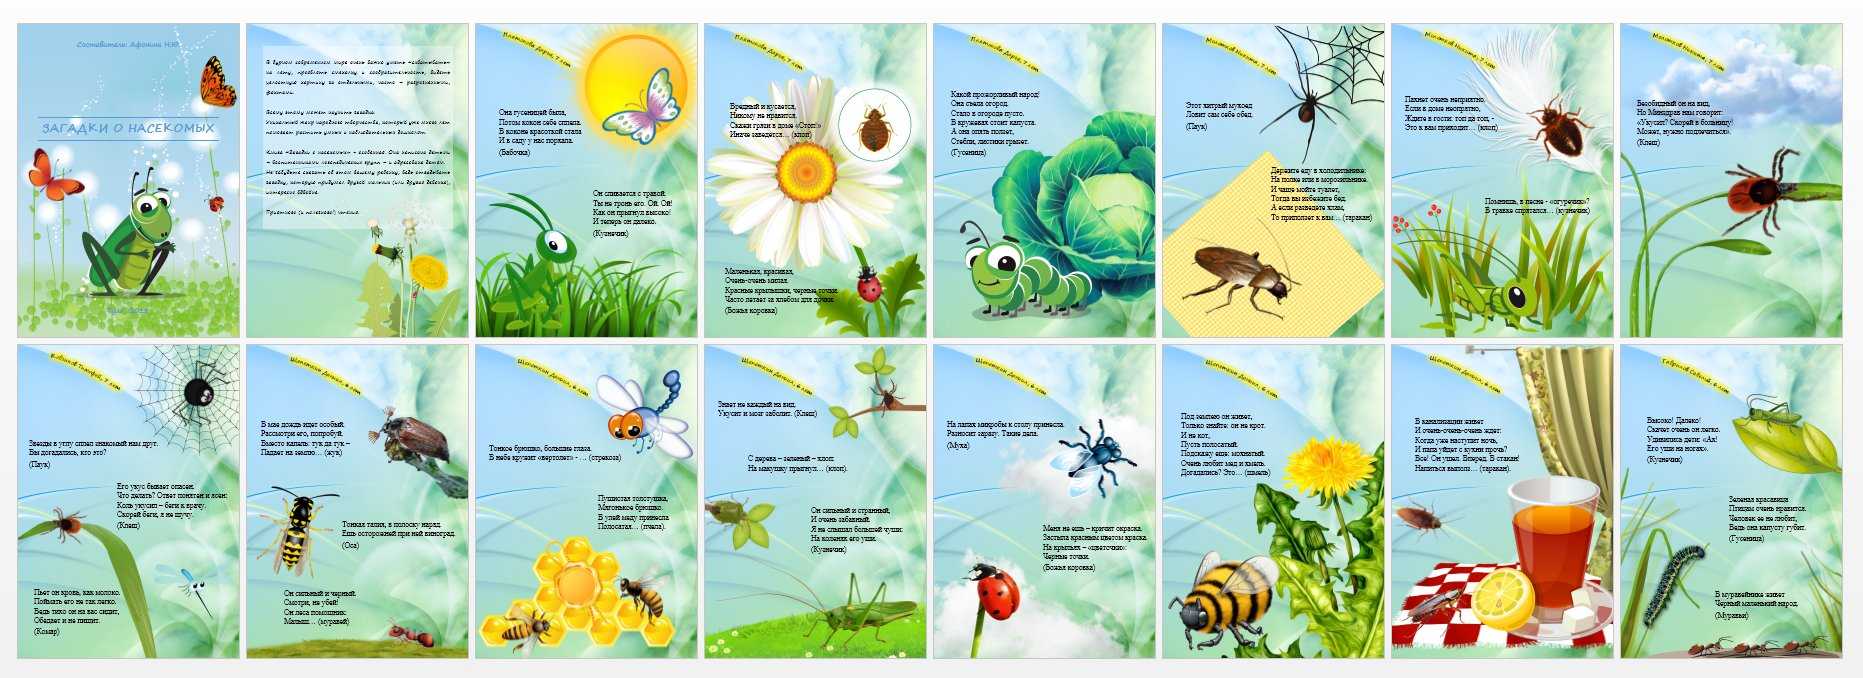 Про насекомых для детей 4 5. Загадки про насекомых для детей 6-7. Загадки про насекомых для детей. Загадки про насекомых для дошкольников. Загадки для детей про насекомых с ответами.